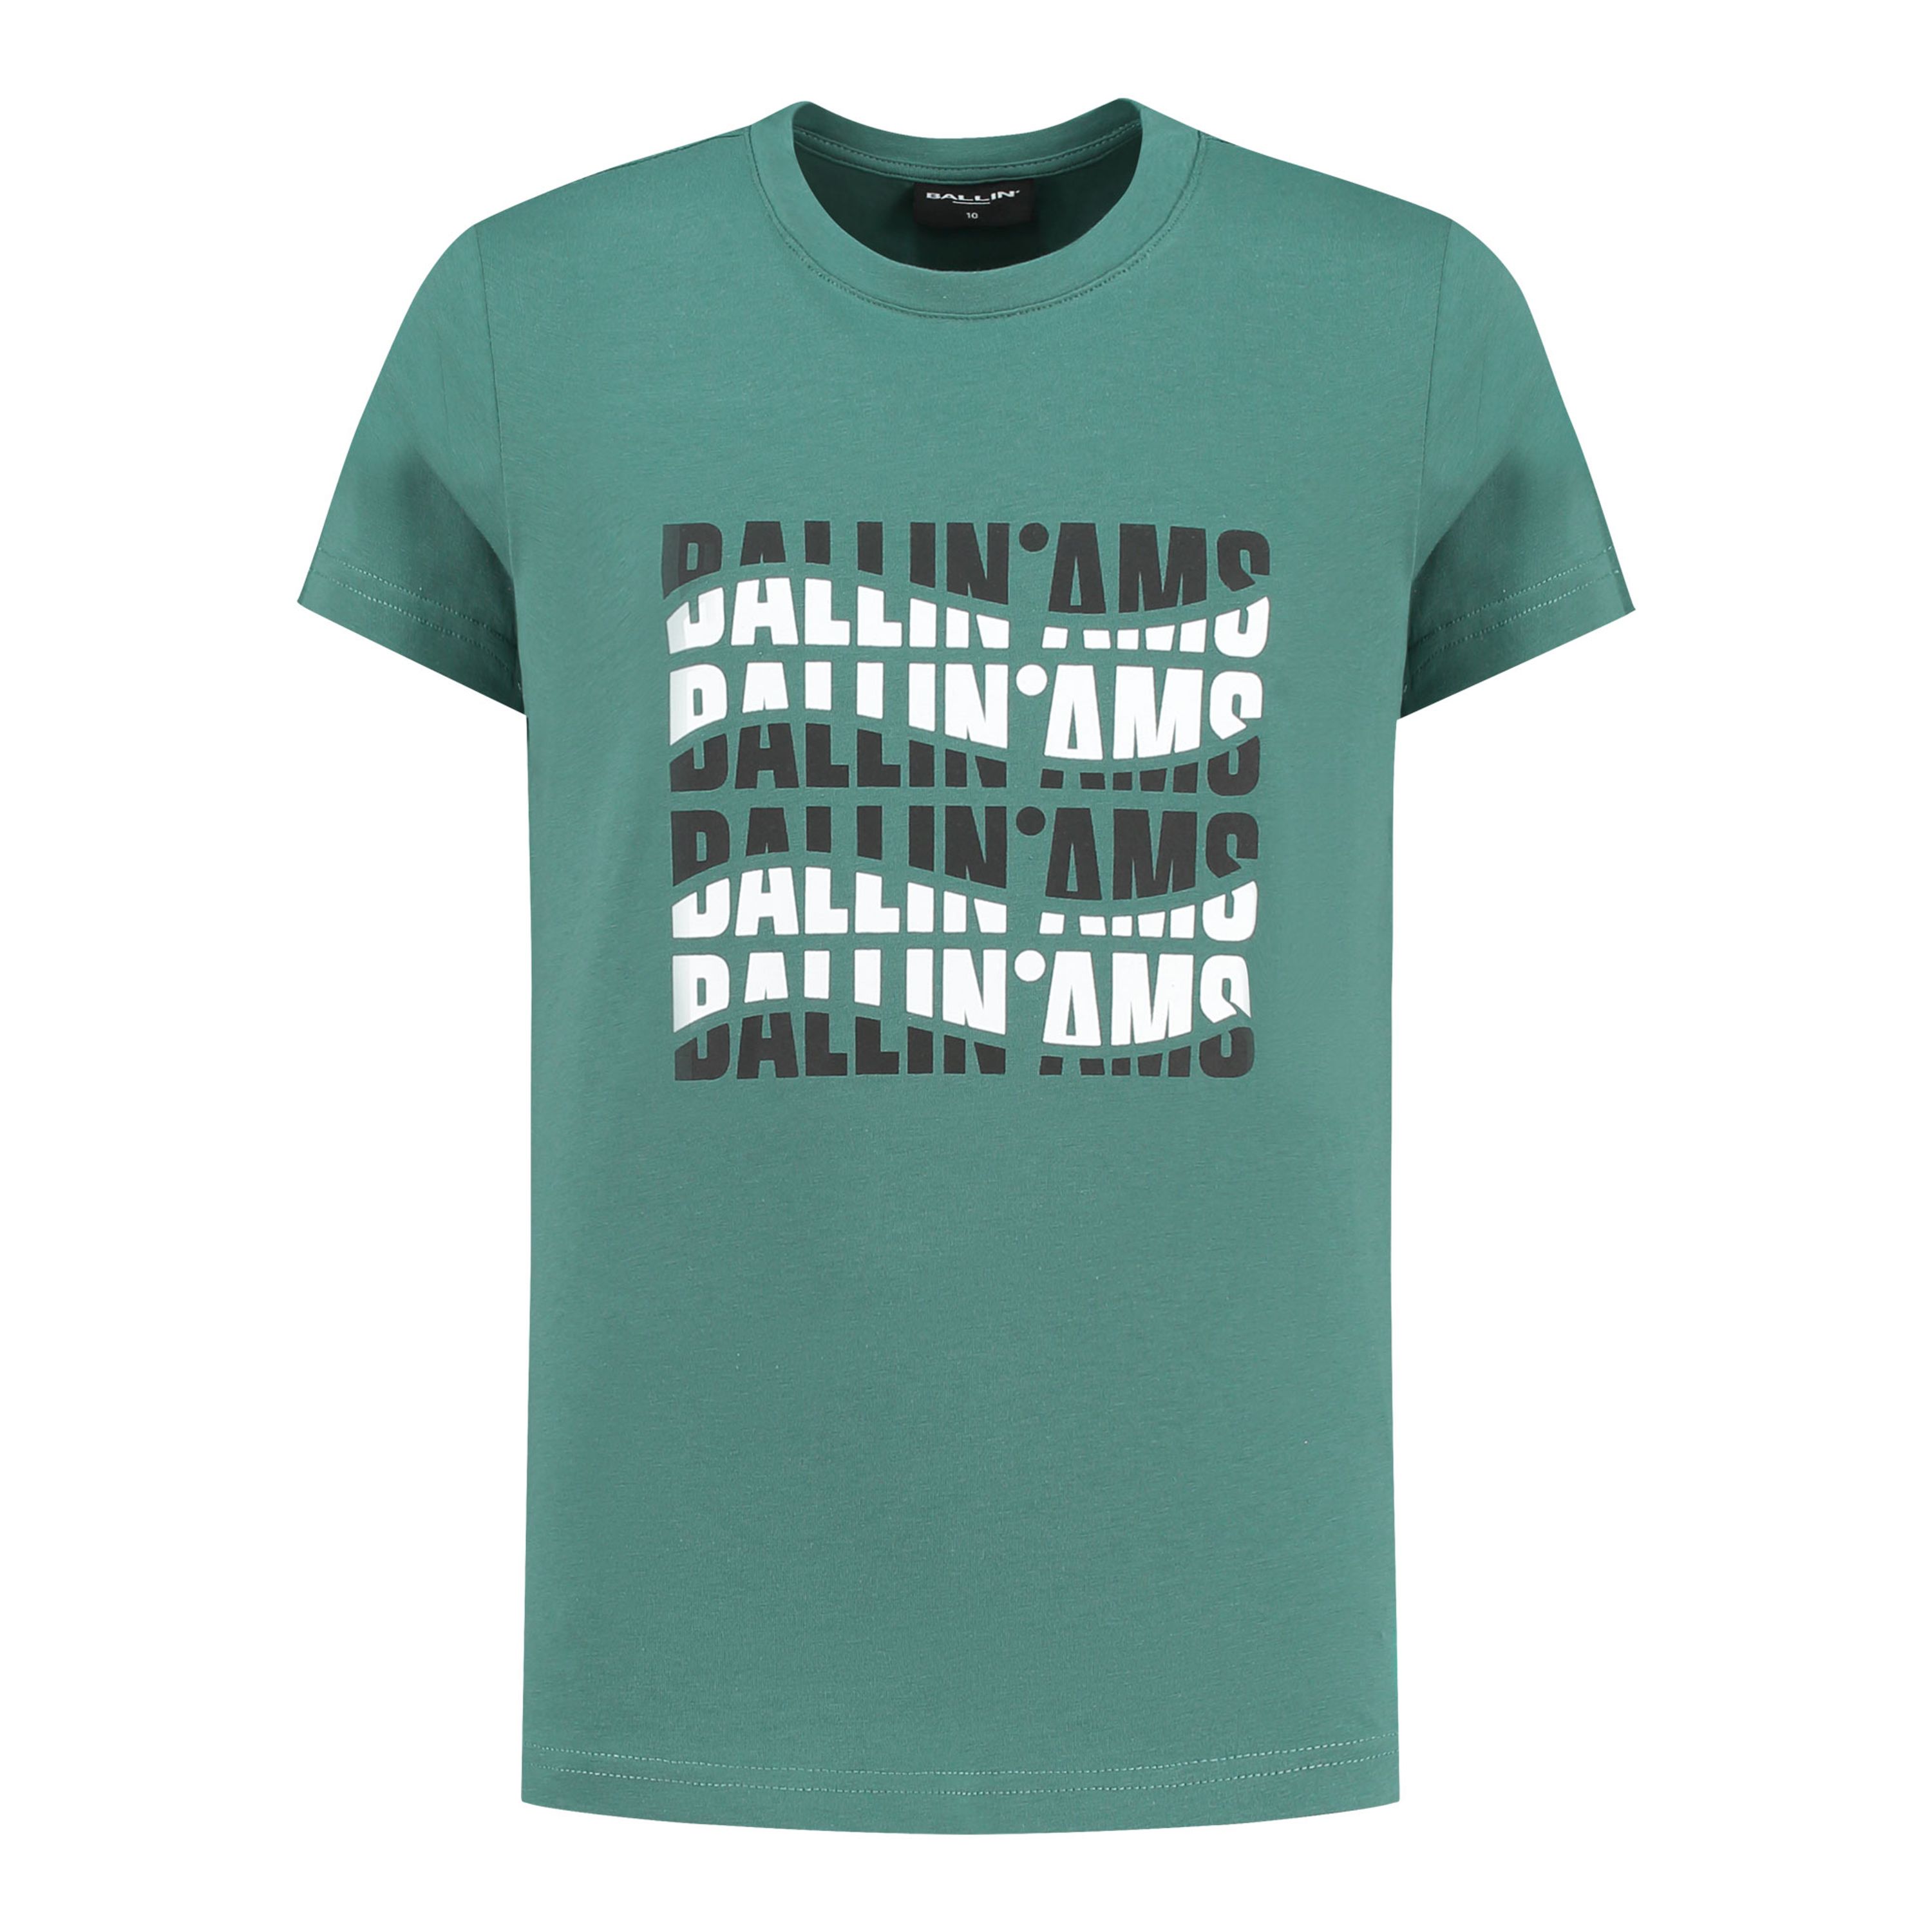 Ballin T-shirt met printopdruk groen Jongens Katoen Ronde hals Printopdruk 176